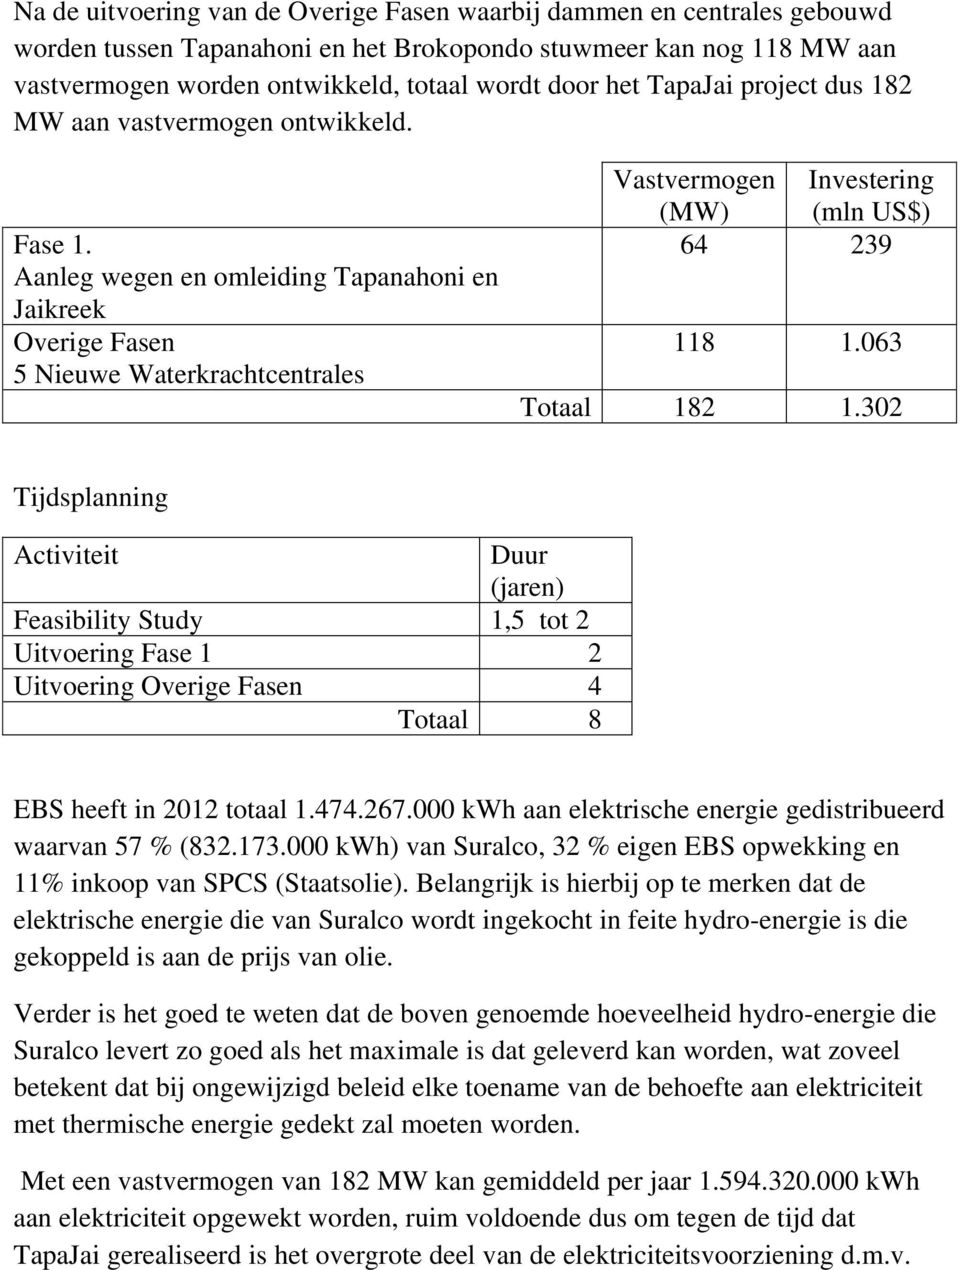 Aanleg wegen en omleiding Tapanahoni en Jaikreek Overige Fasen 5 Nieuwe Waterkrachtcentrales Vastvermogen (MW) Investering (mln US$) 64 239 118 1.063 Totaal 182 1.